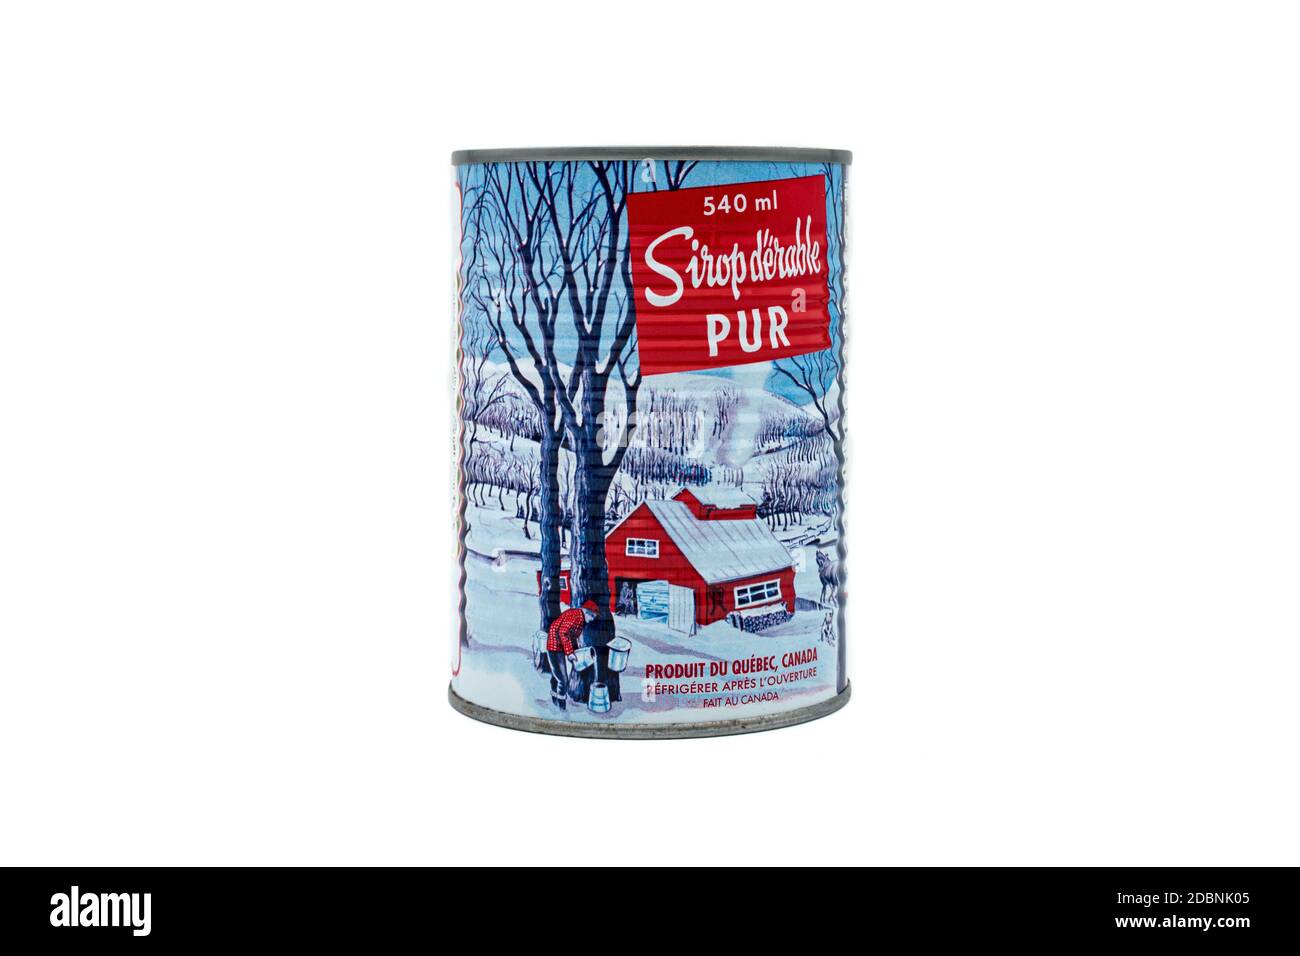 Pure Maple Kanadische Sirup Metall kann mit einer vintage Illustration der traditionellen Methode, ahornsaft zu sammeln, isoliert auf einem weißen Hintergrund. Stockfoto